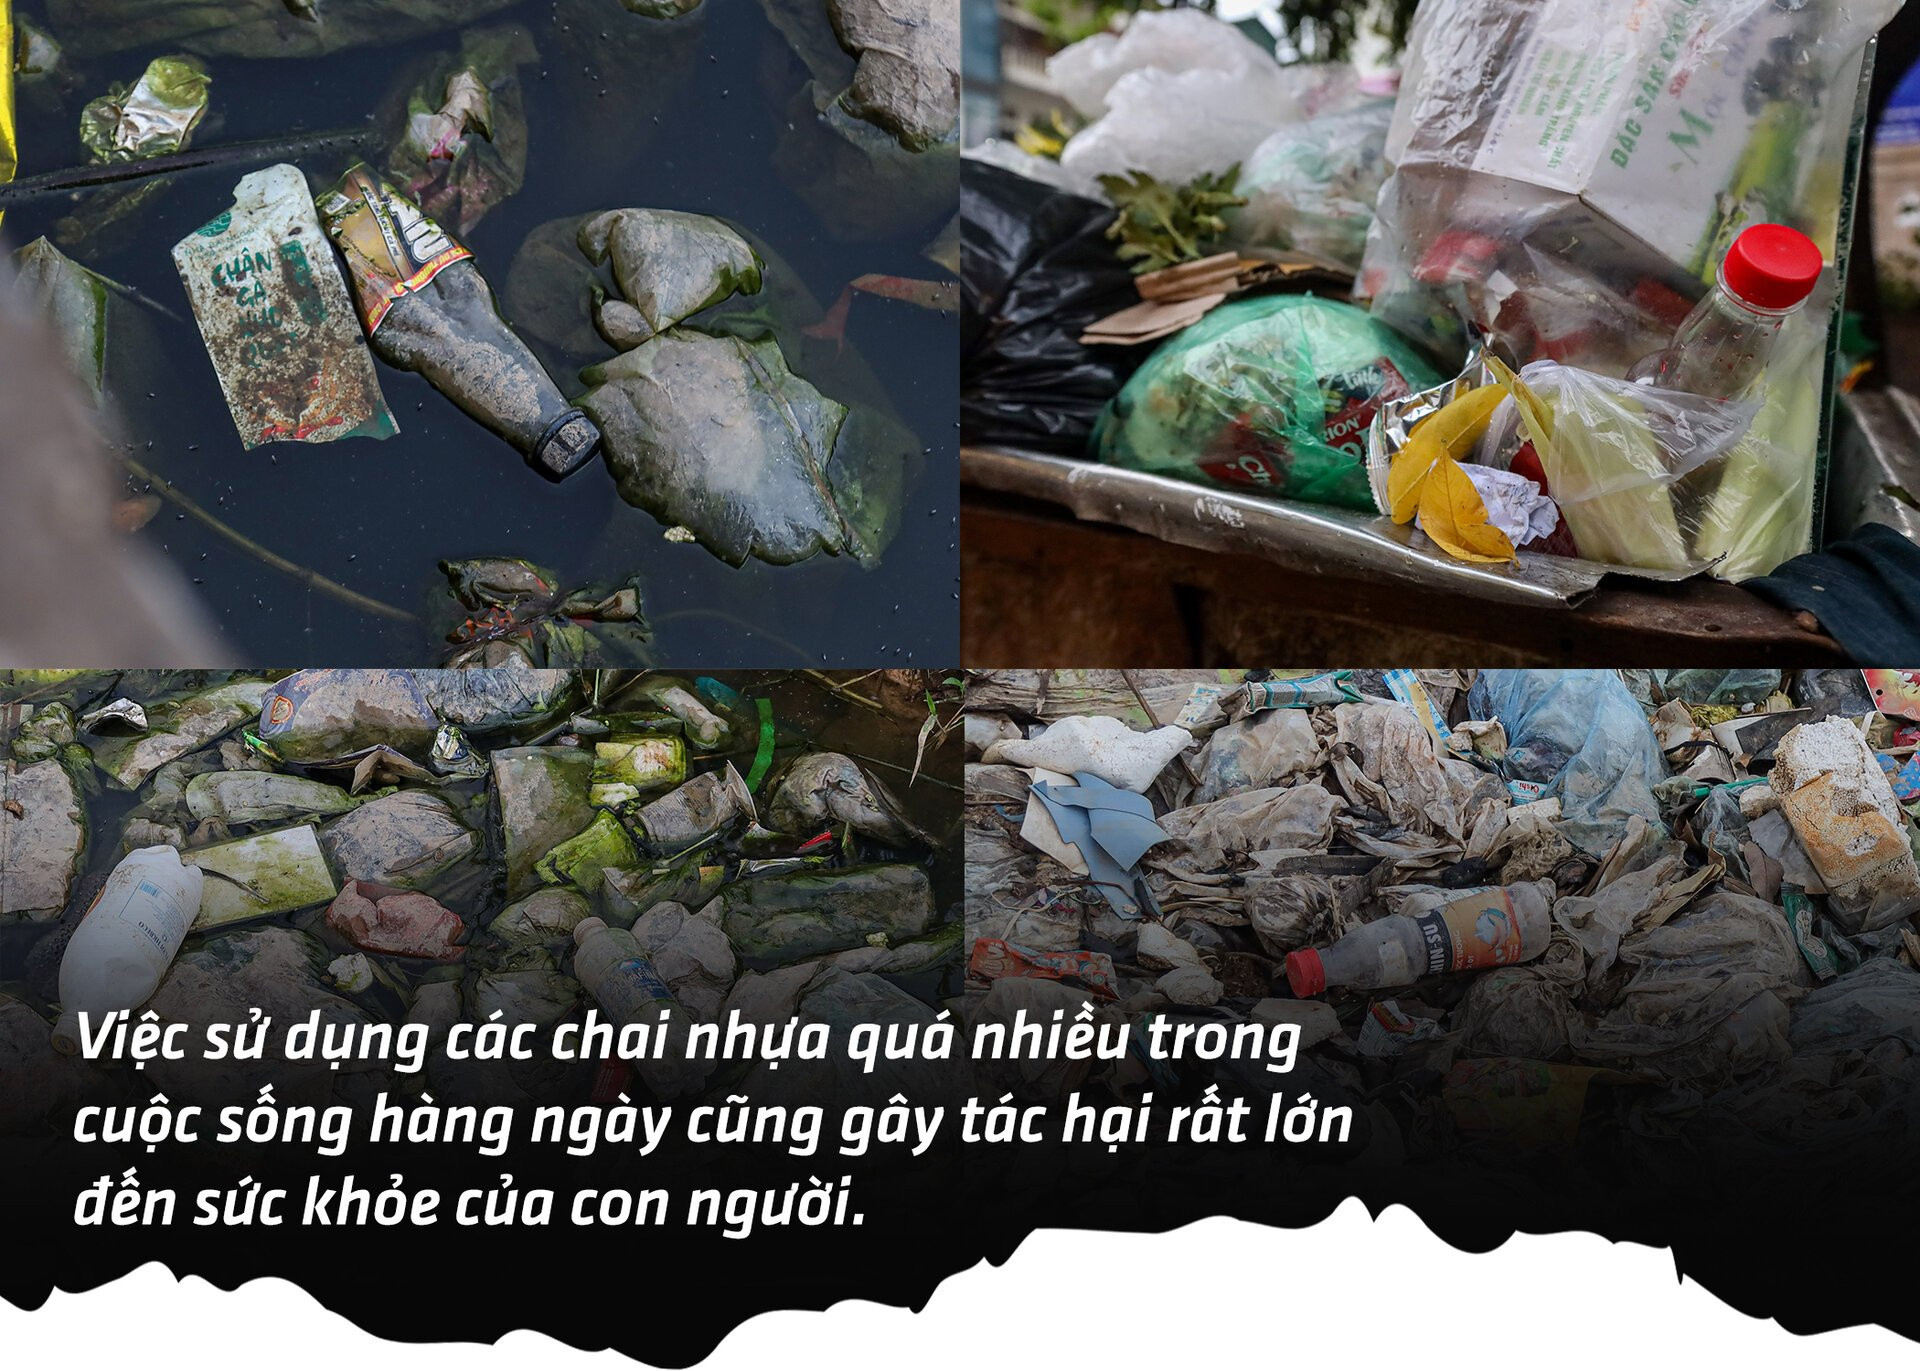 Chai nhựa, túi nylon đang hủy diệt môi trường Việt Nam ra sao? - 3